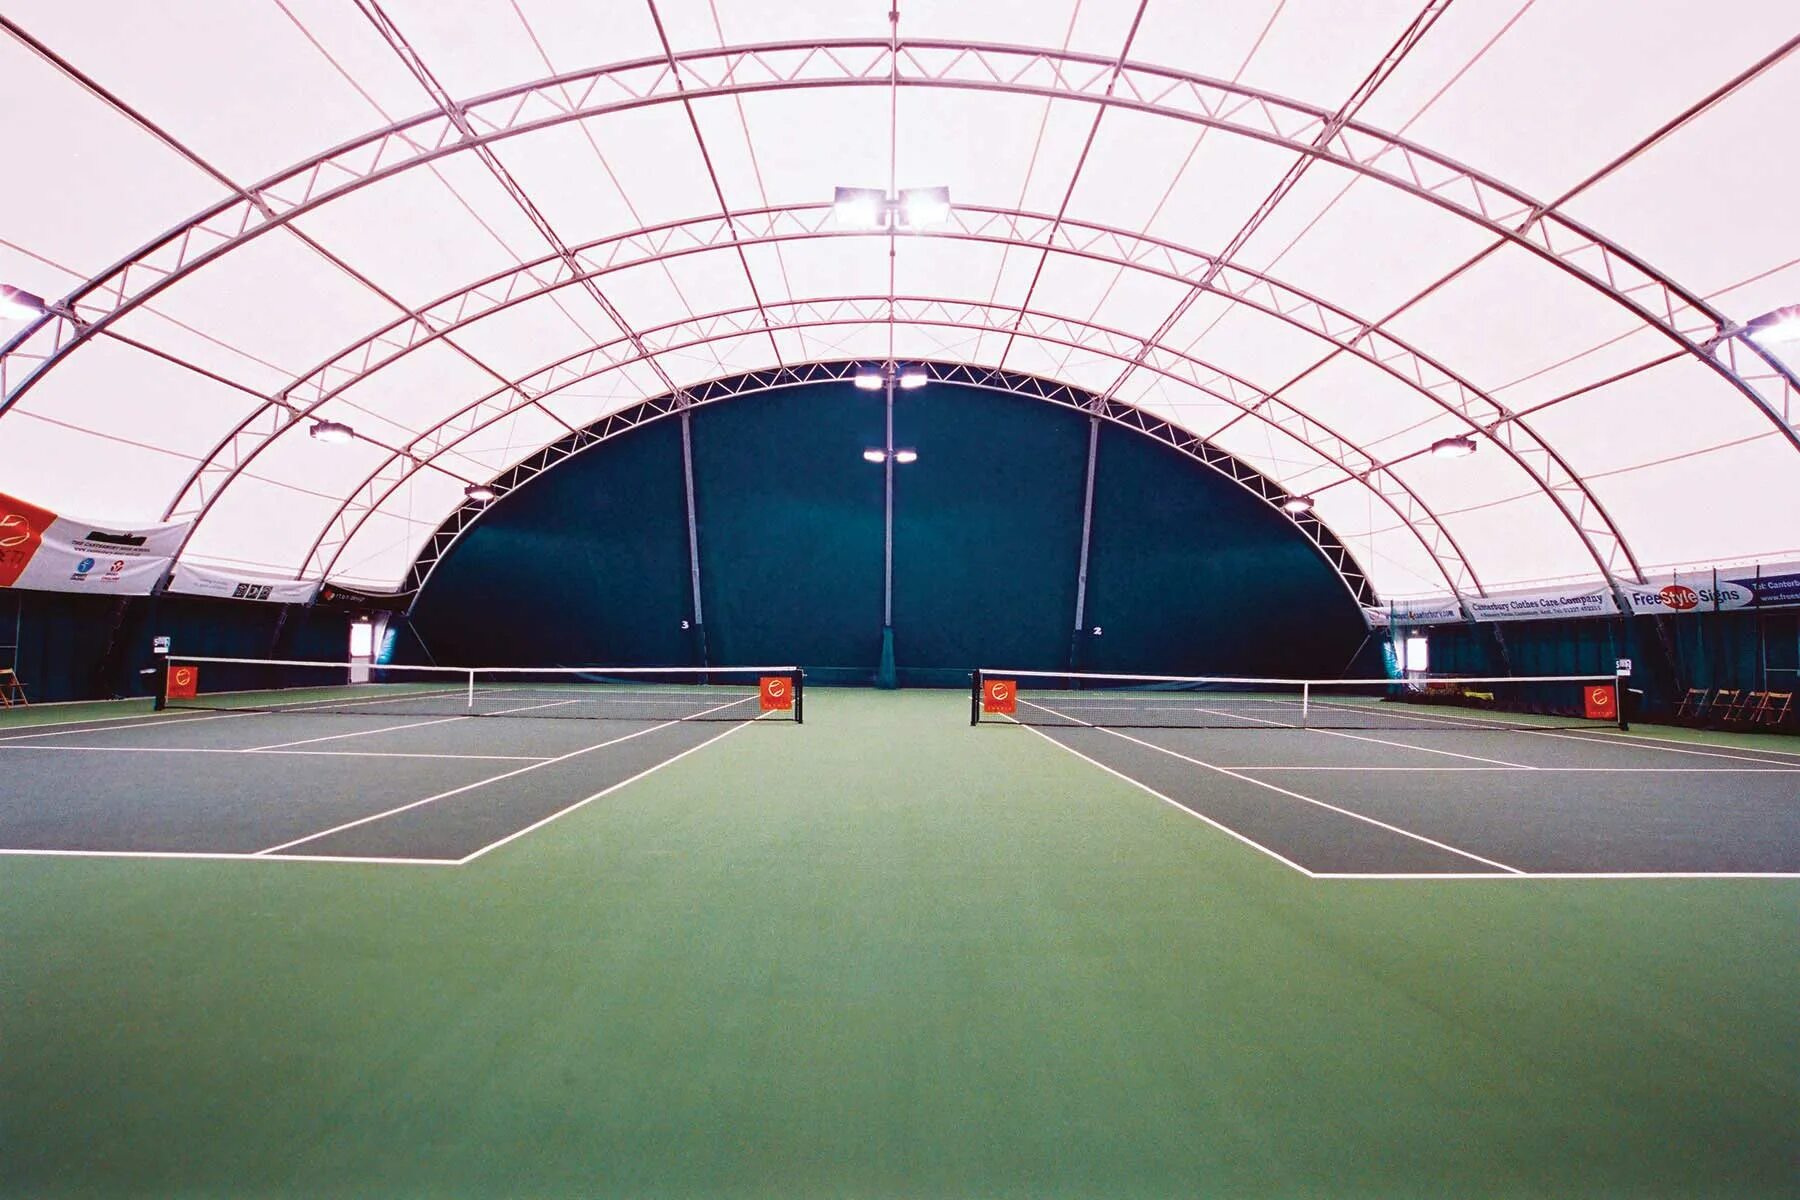 Сад имени Баумана теннисный корт. Стадион Ангара легкоатлетический манеж. Теннисный корт 40 на 20. Теннисный корт Гамильтон. Строительство теннисных кортов